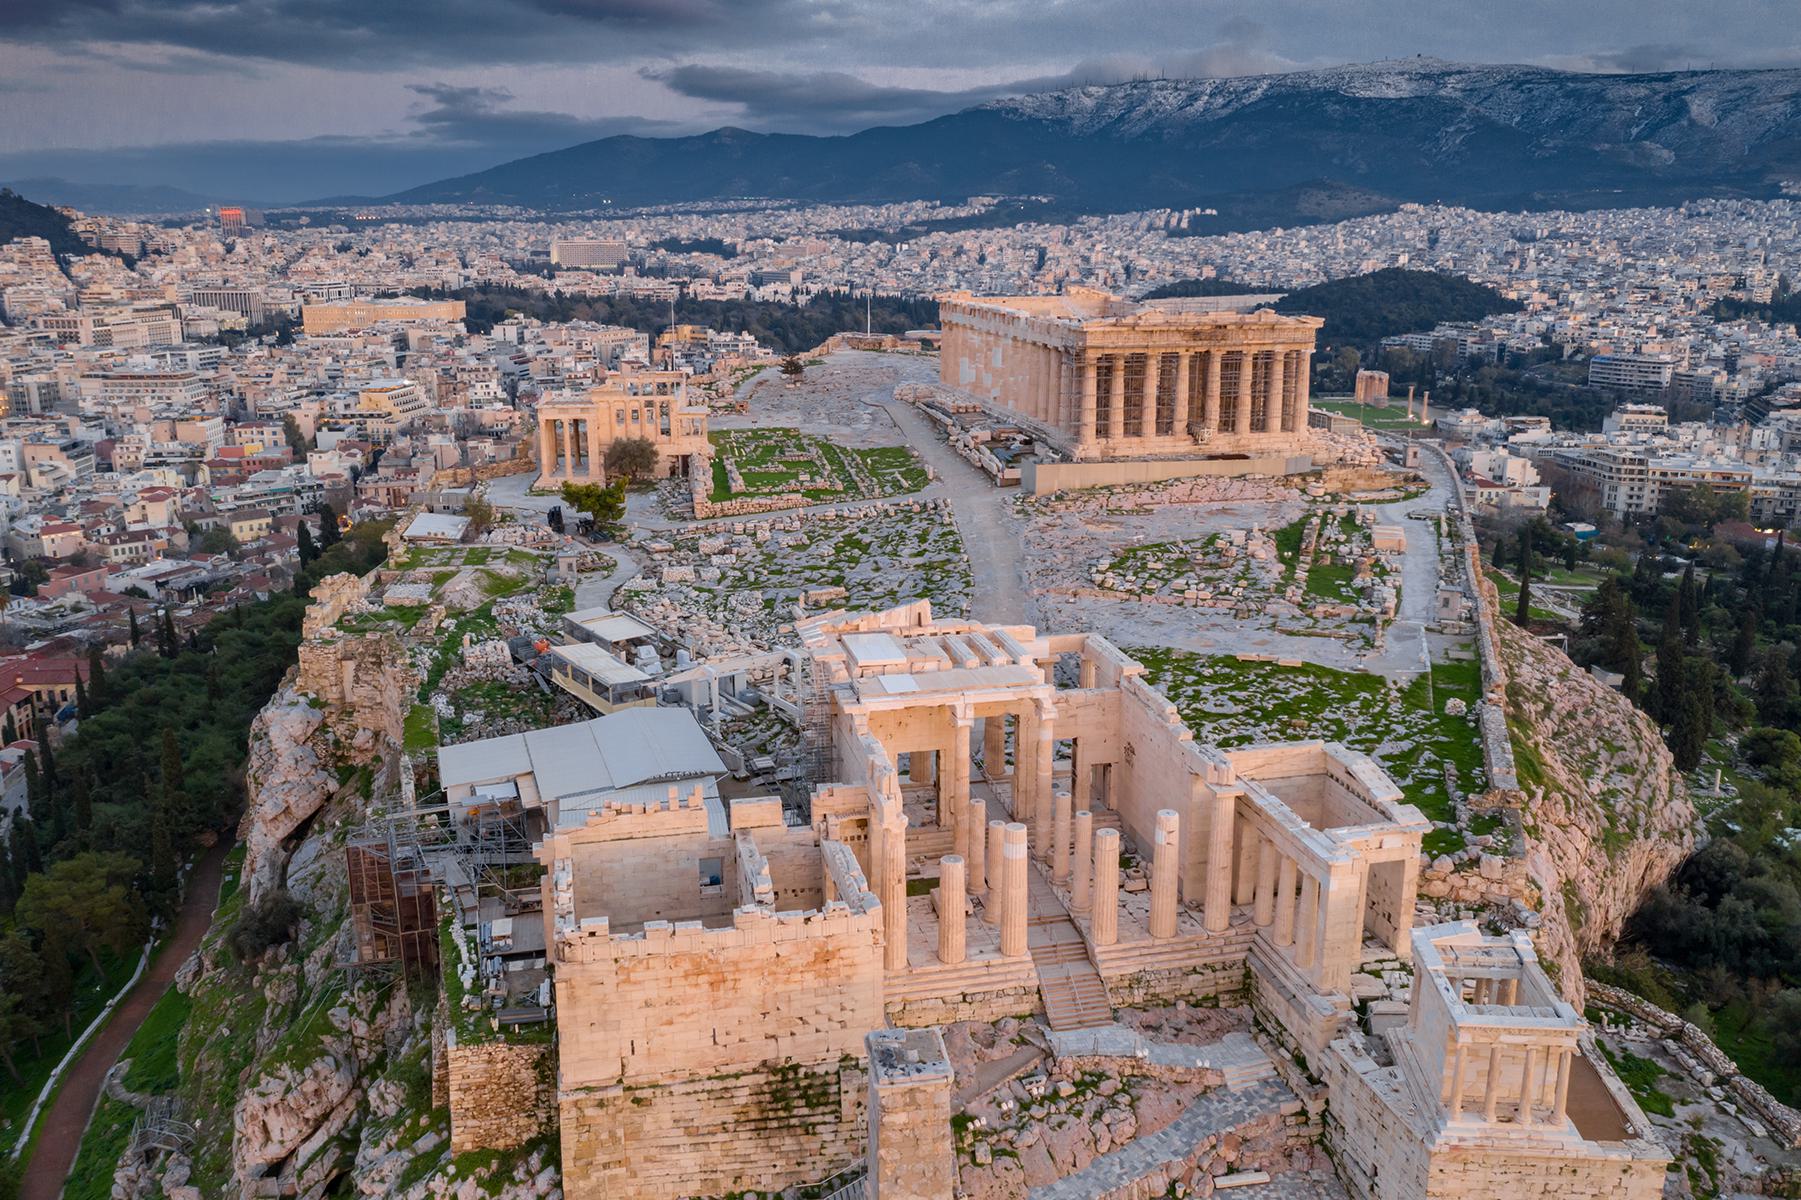 Acropolis - Athens, Greece